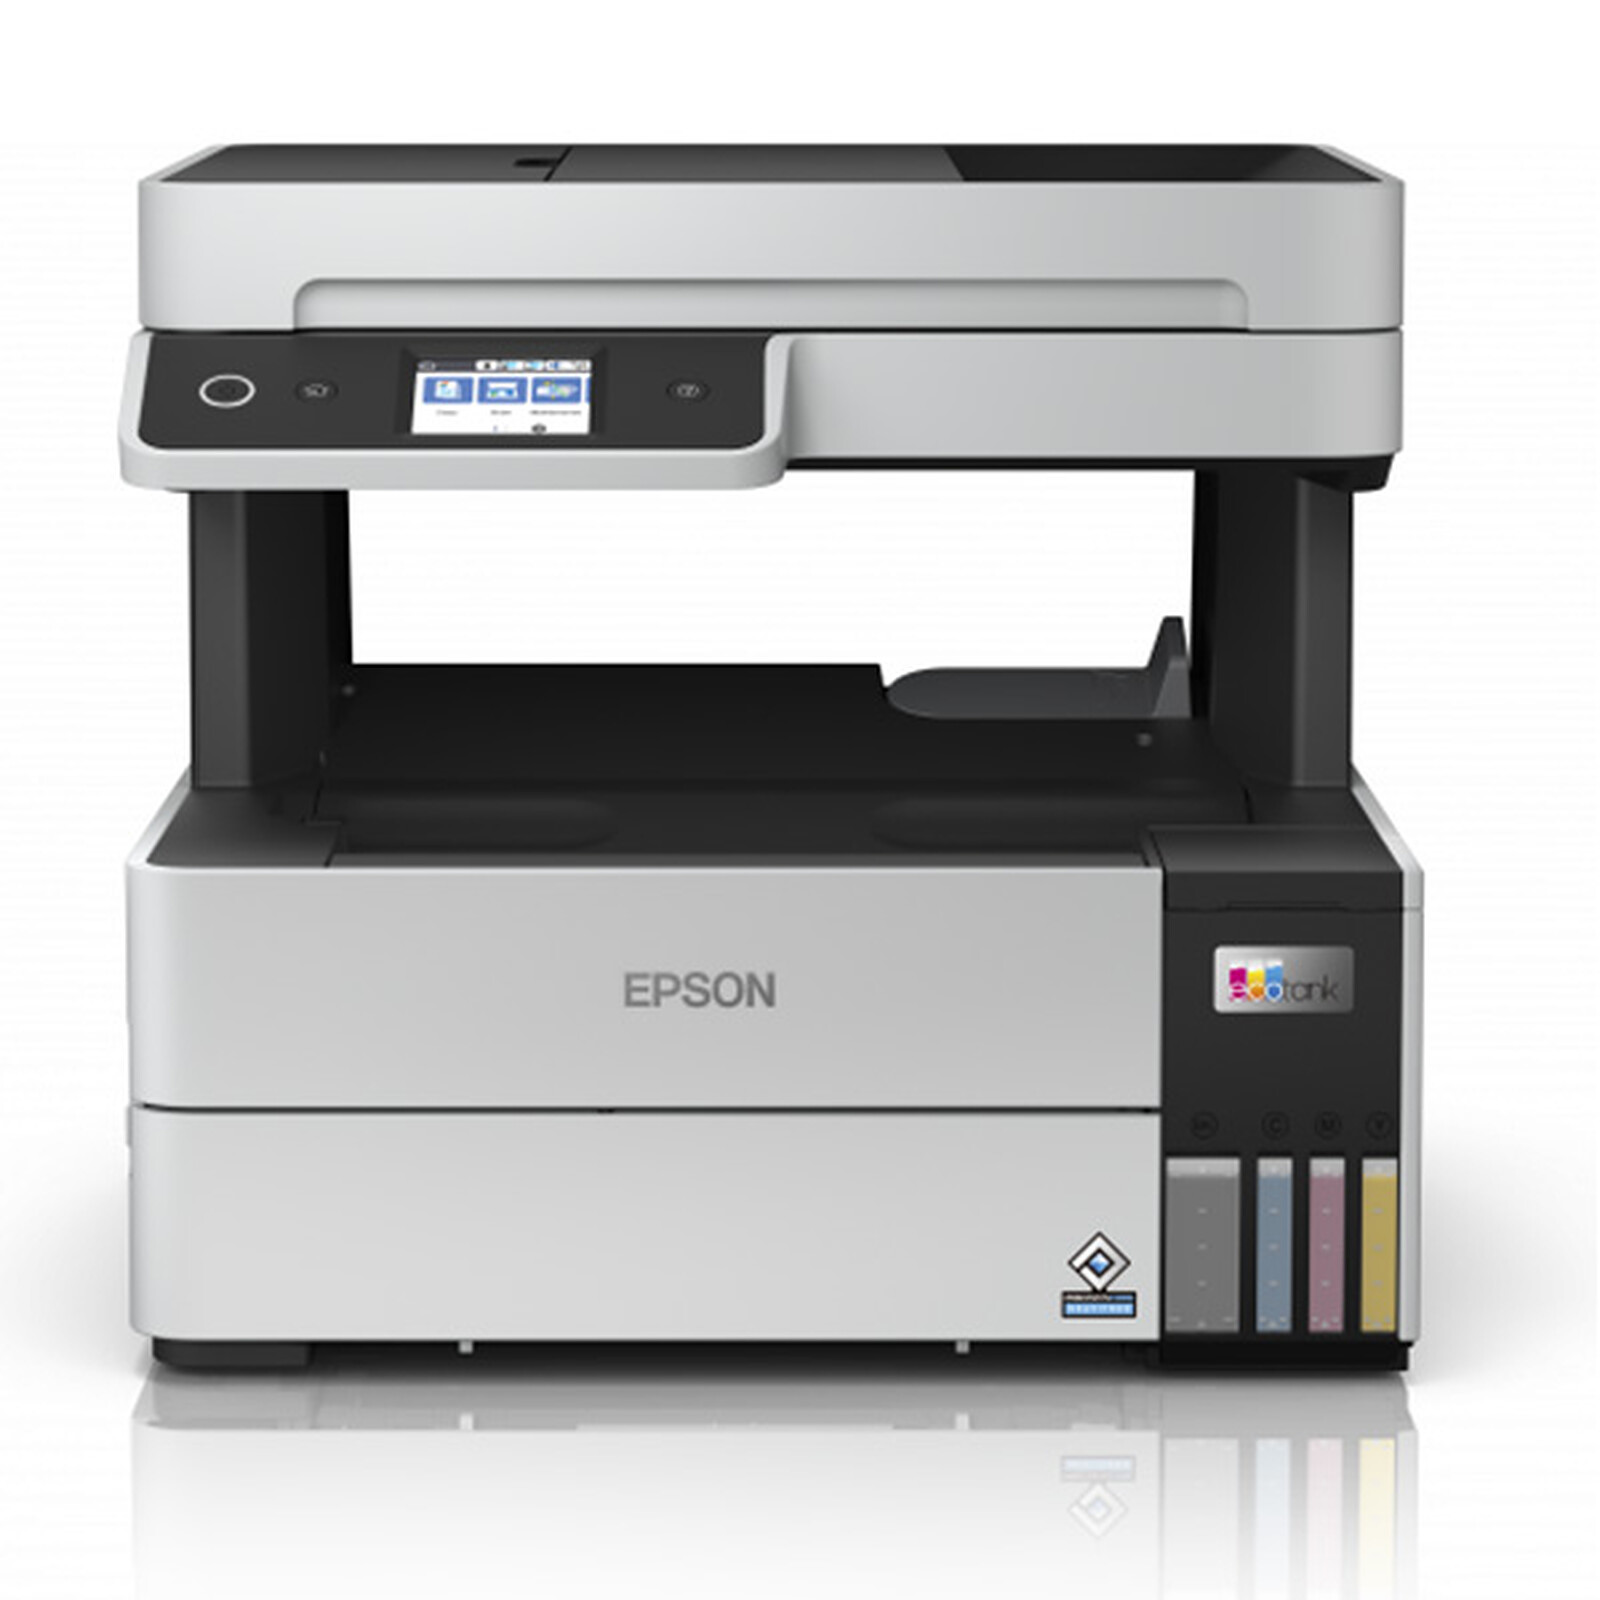 EPSON - Imprimante jet d'encre Expression Home XP-3200 - Multifonction -  Tirages A4